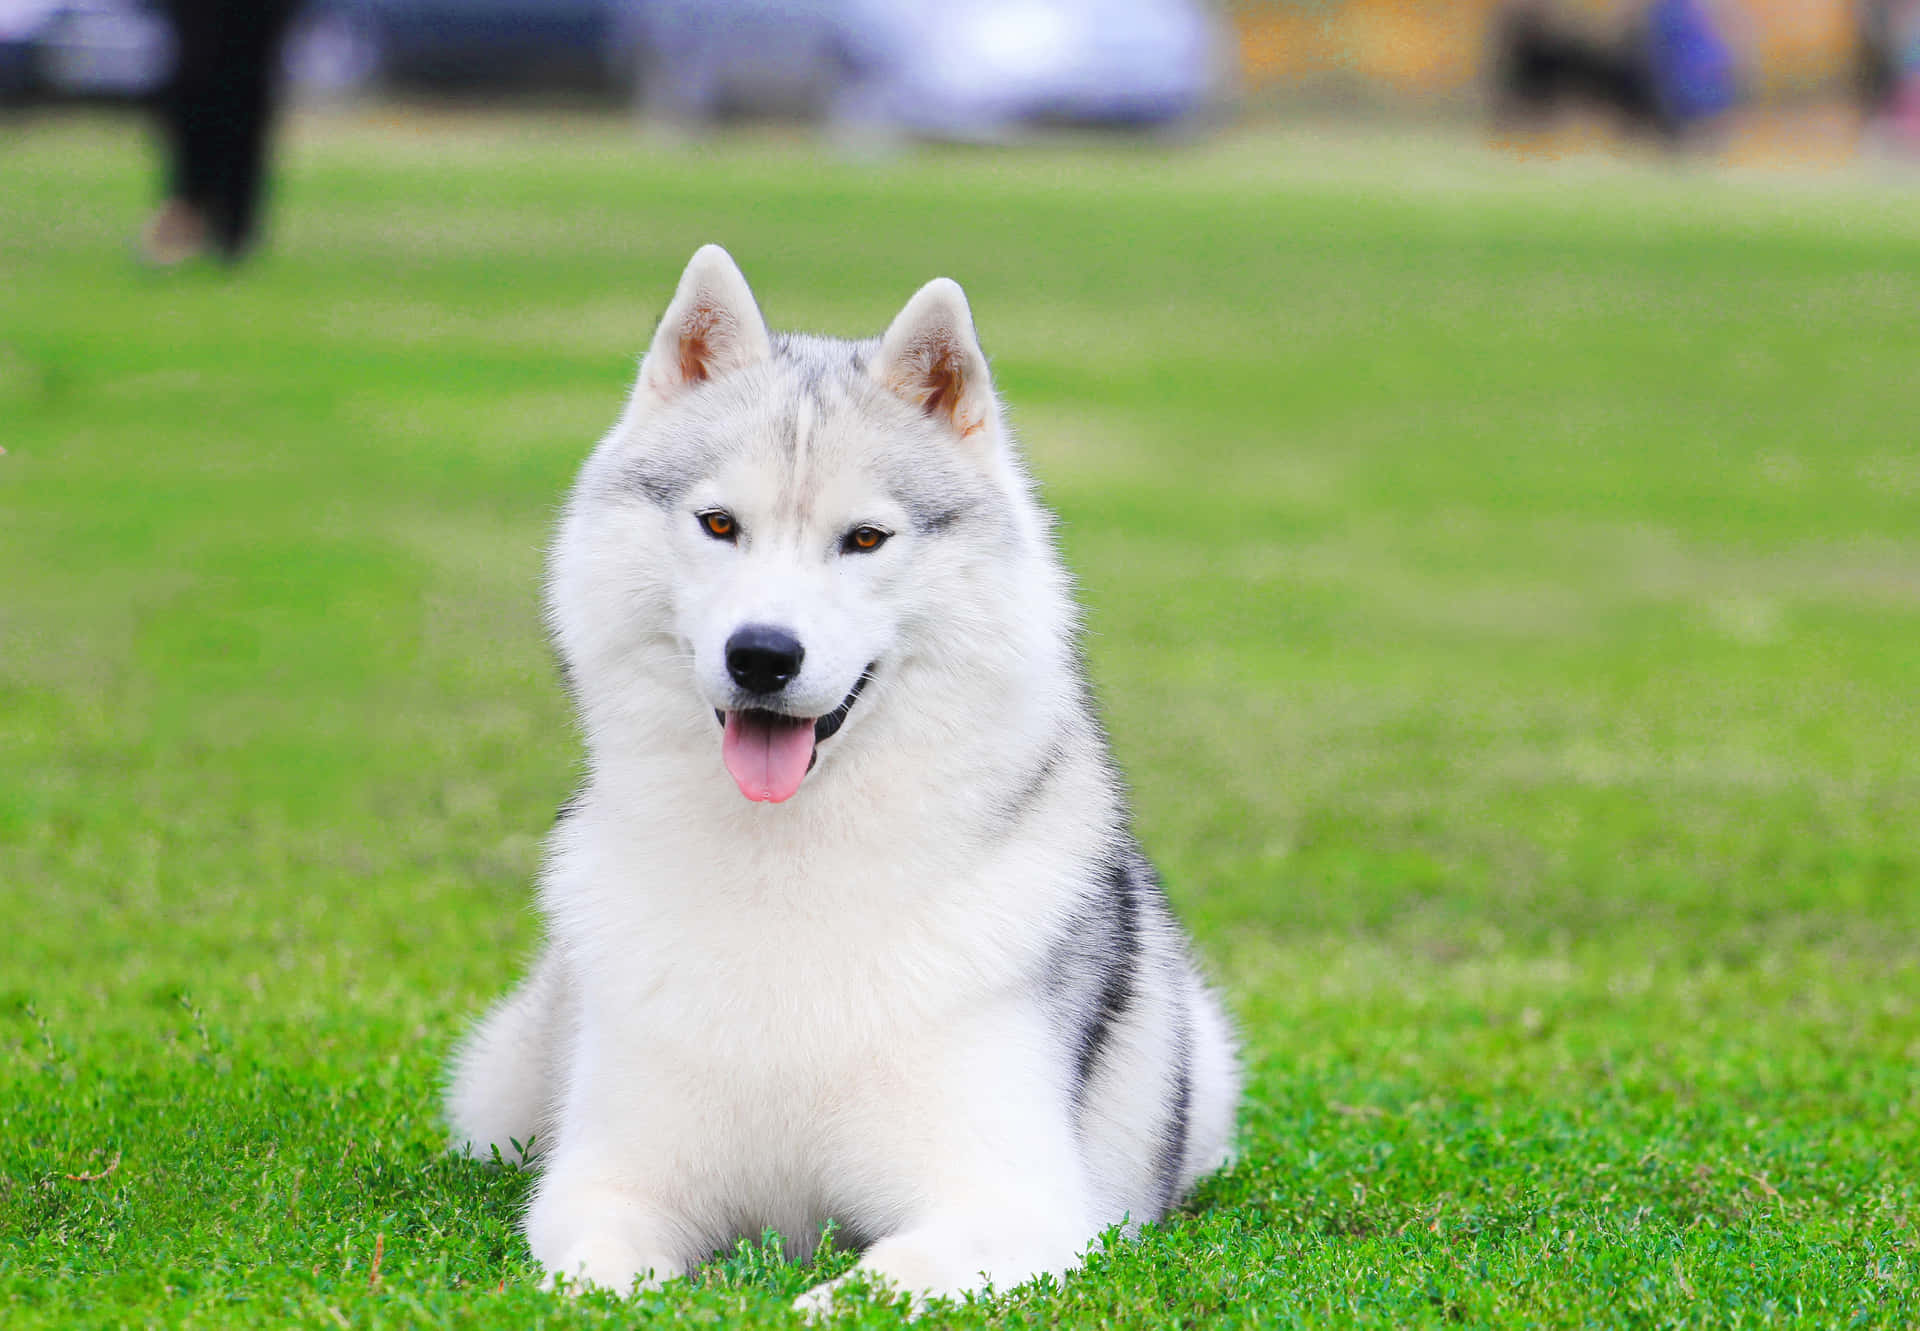 Siberian Husky Picture Cute Dog